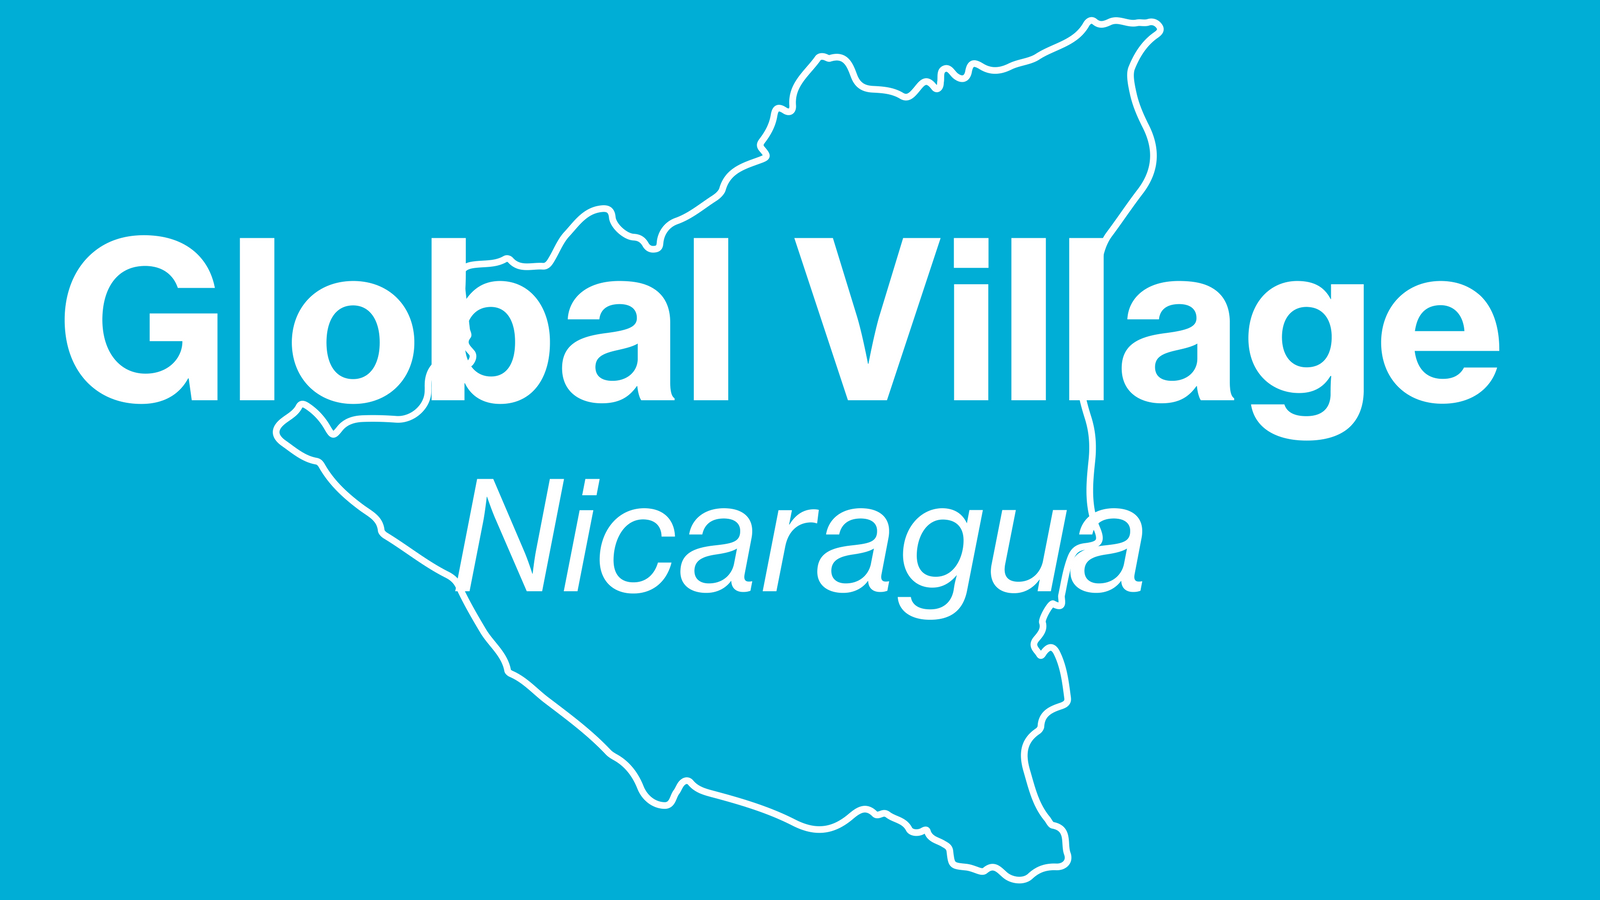 Global Village Update: We've Arrived in Nicaragua!